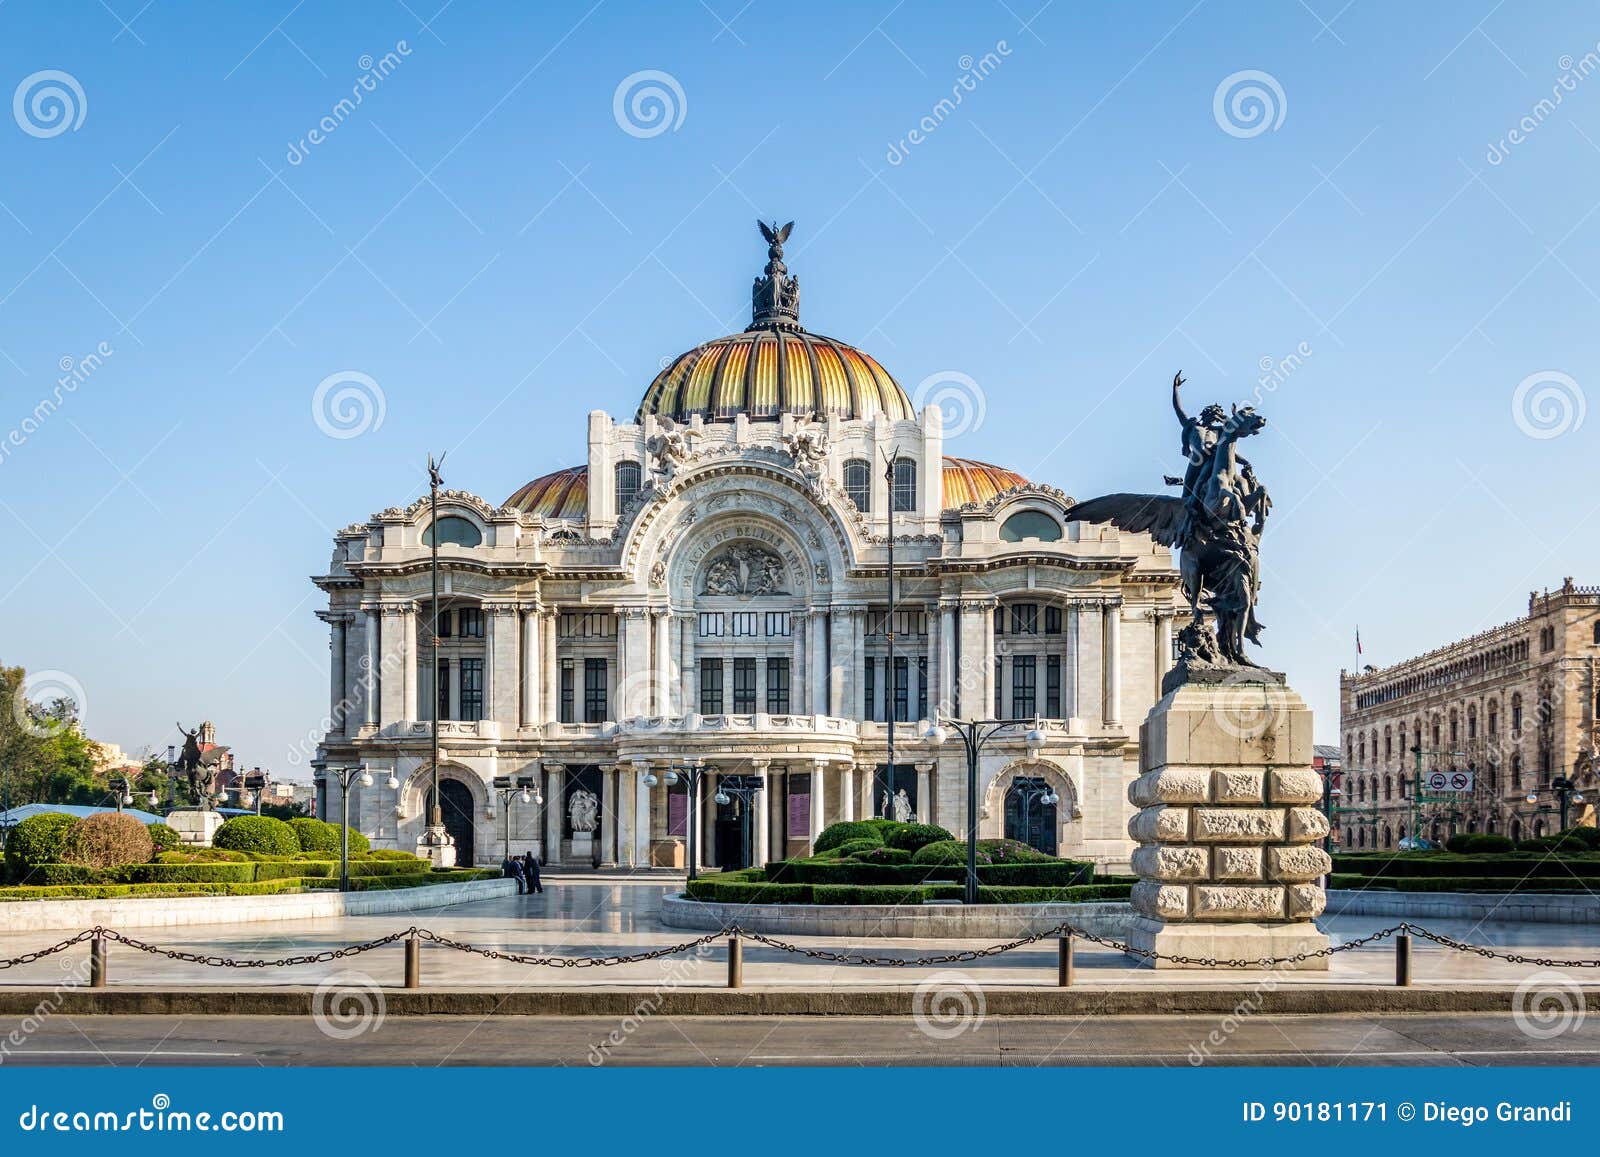 palacio de bellas artes fine arts palace - mexico city, mexico